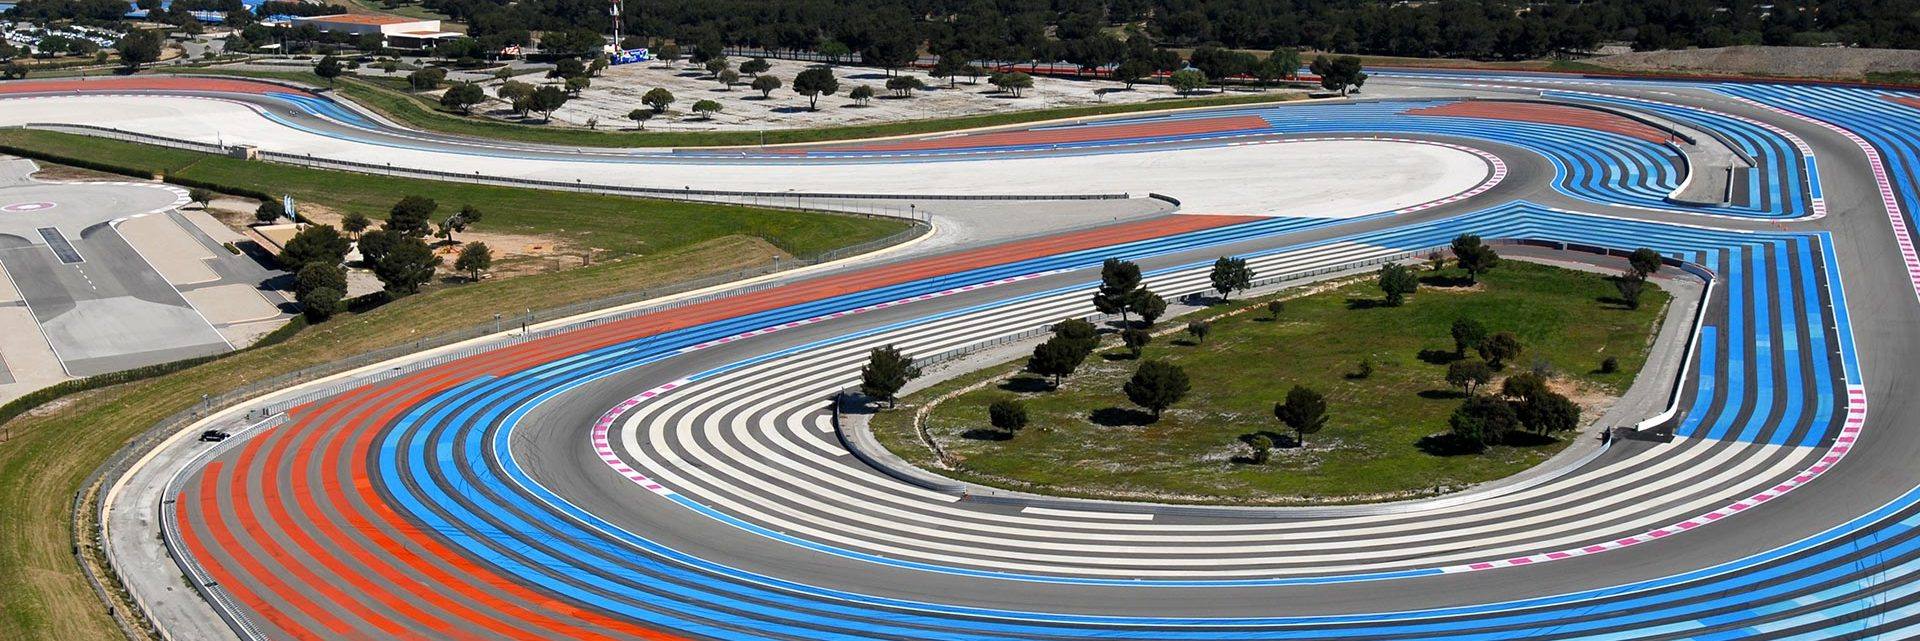 Paul Ricard race track in Castellet